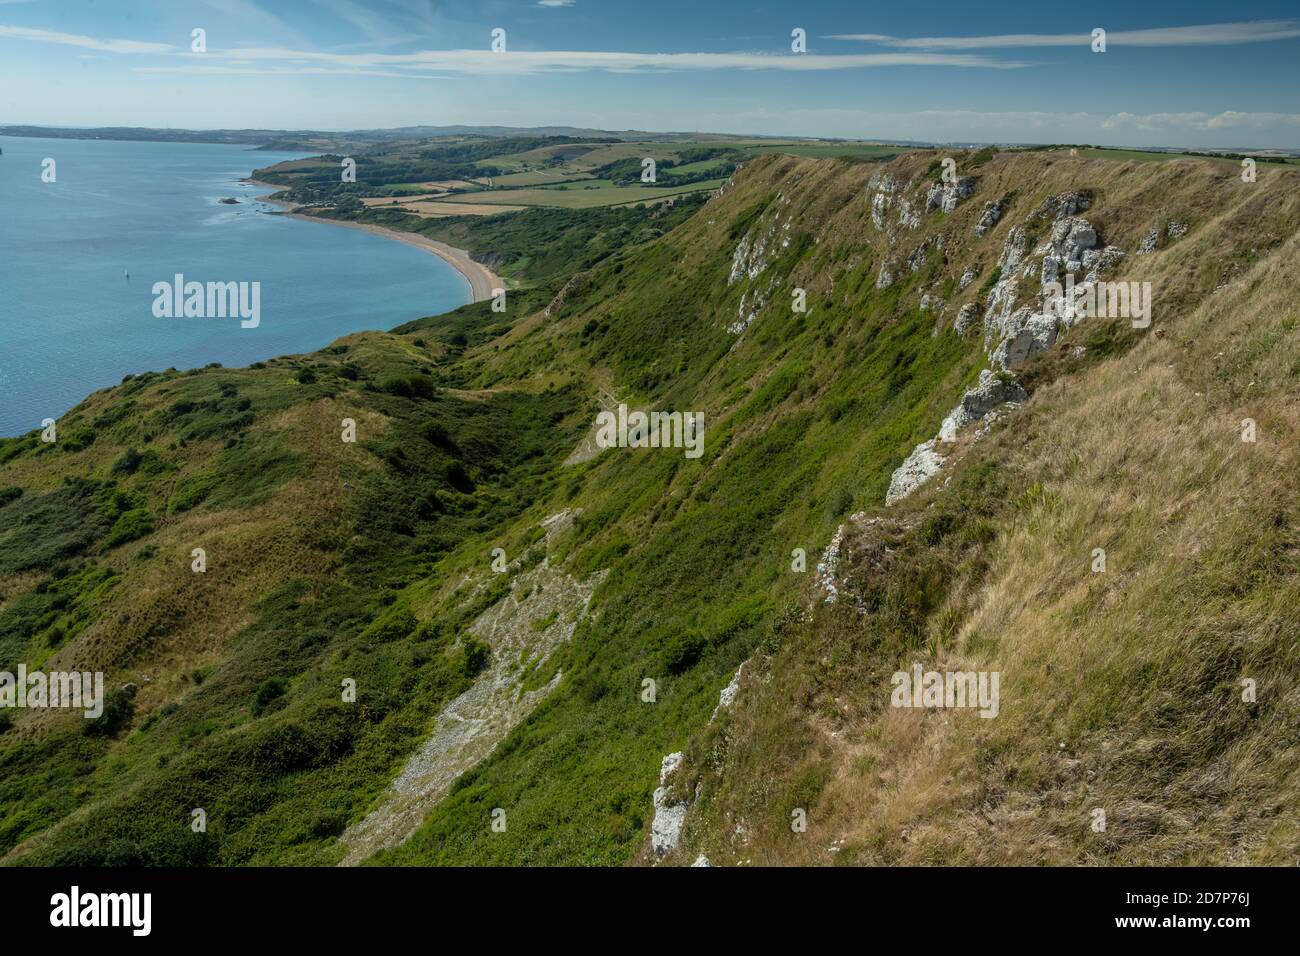 Bianche scogliere di gesso, con scoscese scogliere sottostanti sulla costa occidentale del Dorset, che si affaccia a ovest verso Ringstead Bay. Foto Stock